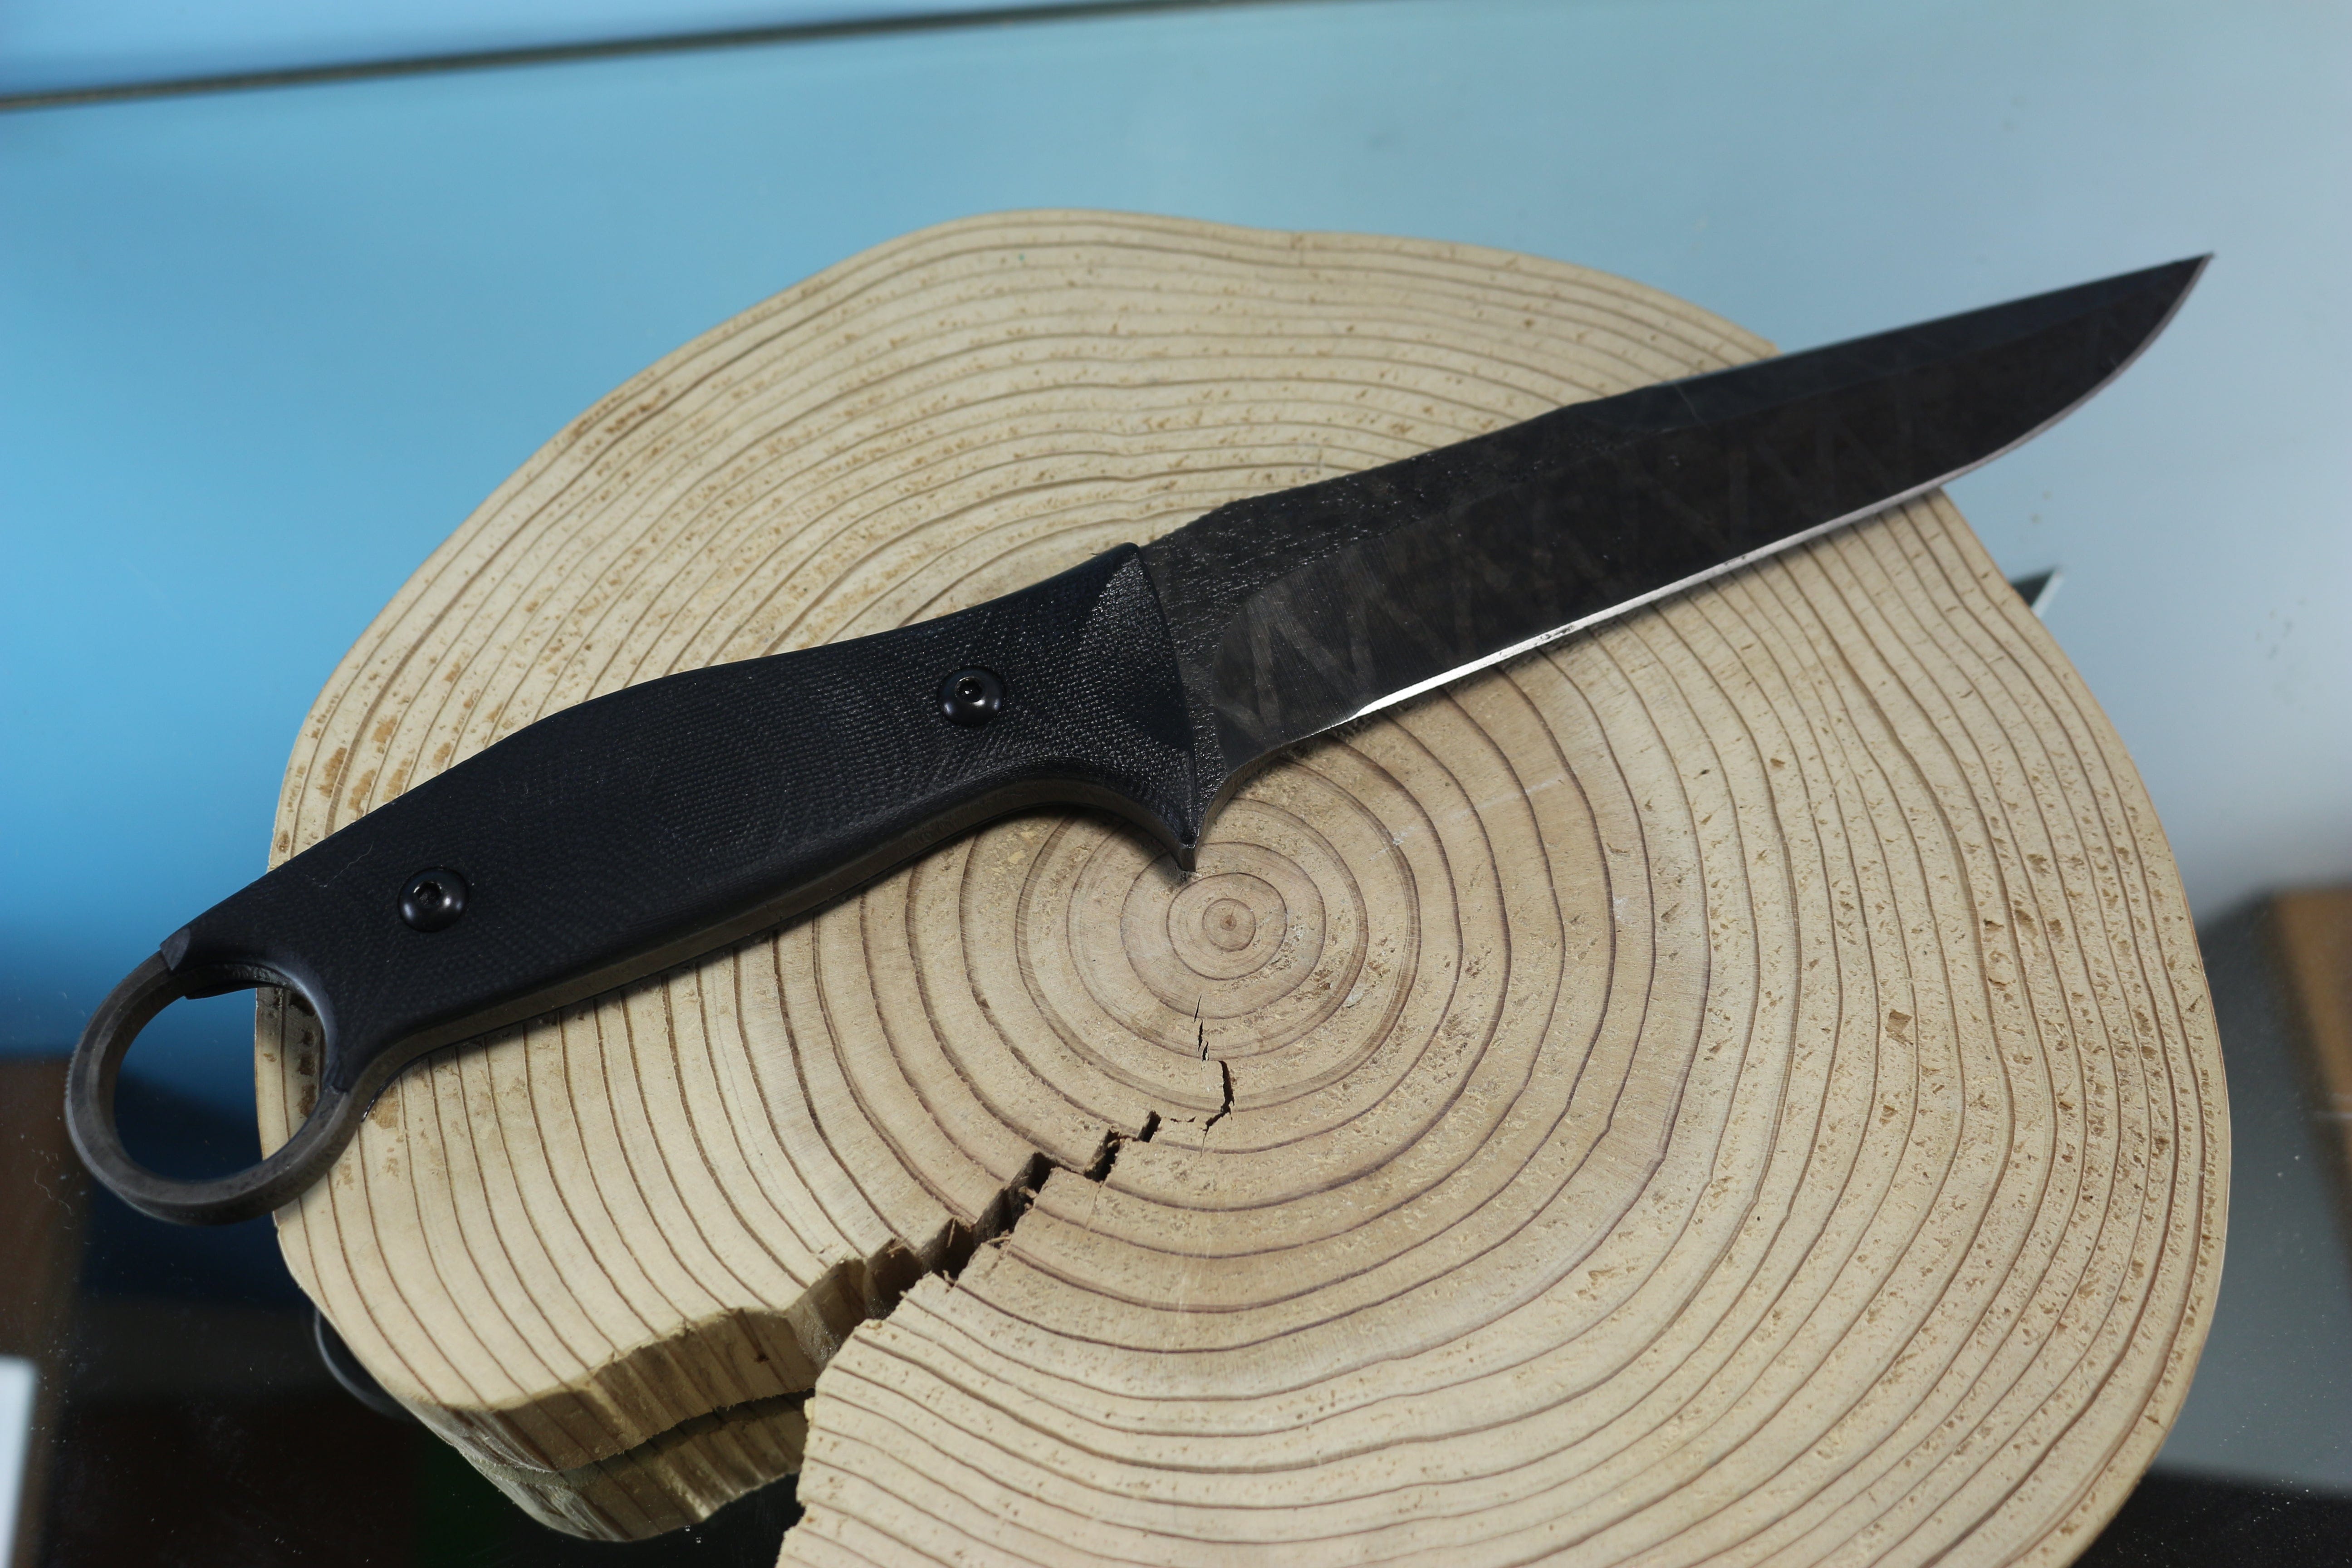 https://japaneseknifedirect.com/cdn/shop/products/makkari-jm-170-muddler-fighting-knife-5-3-4-spear-point-440c-blade-30417325719597.jpg?v=1658736277